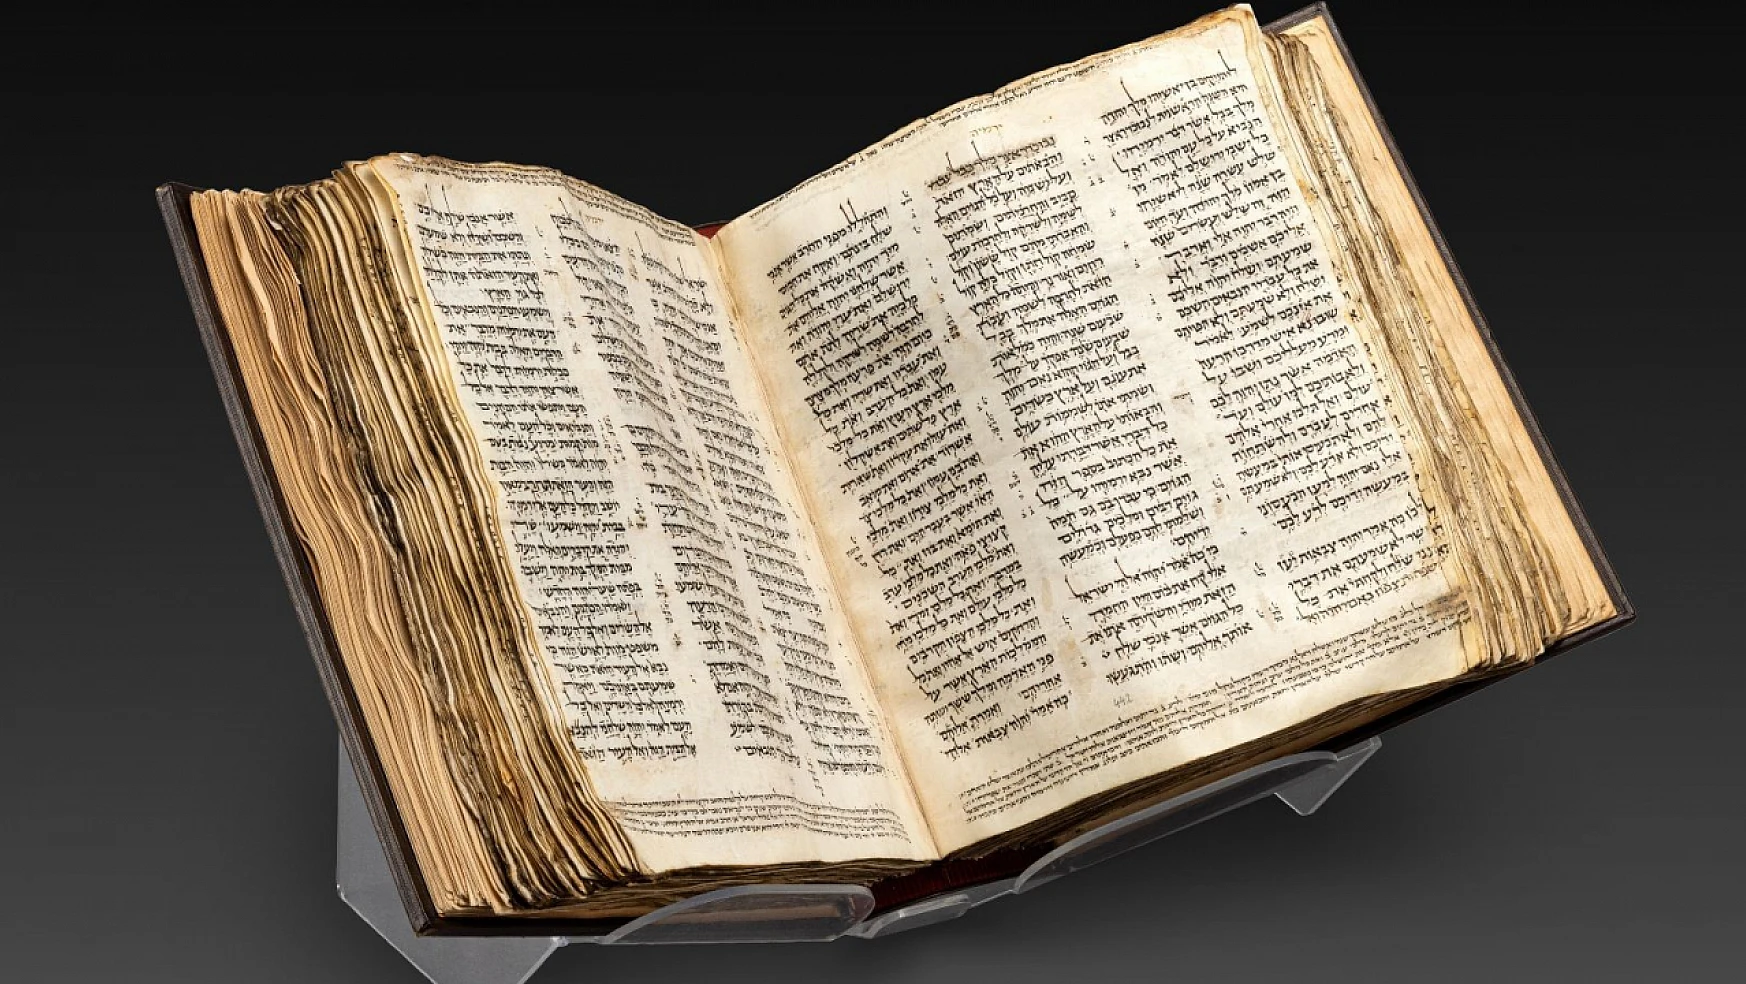 Dünyanın en eski İncil'i 38,1 milyon dolara satıldı